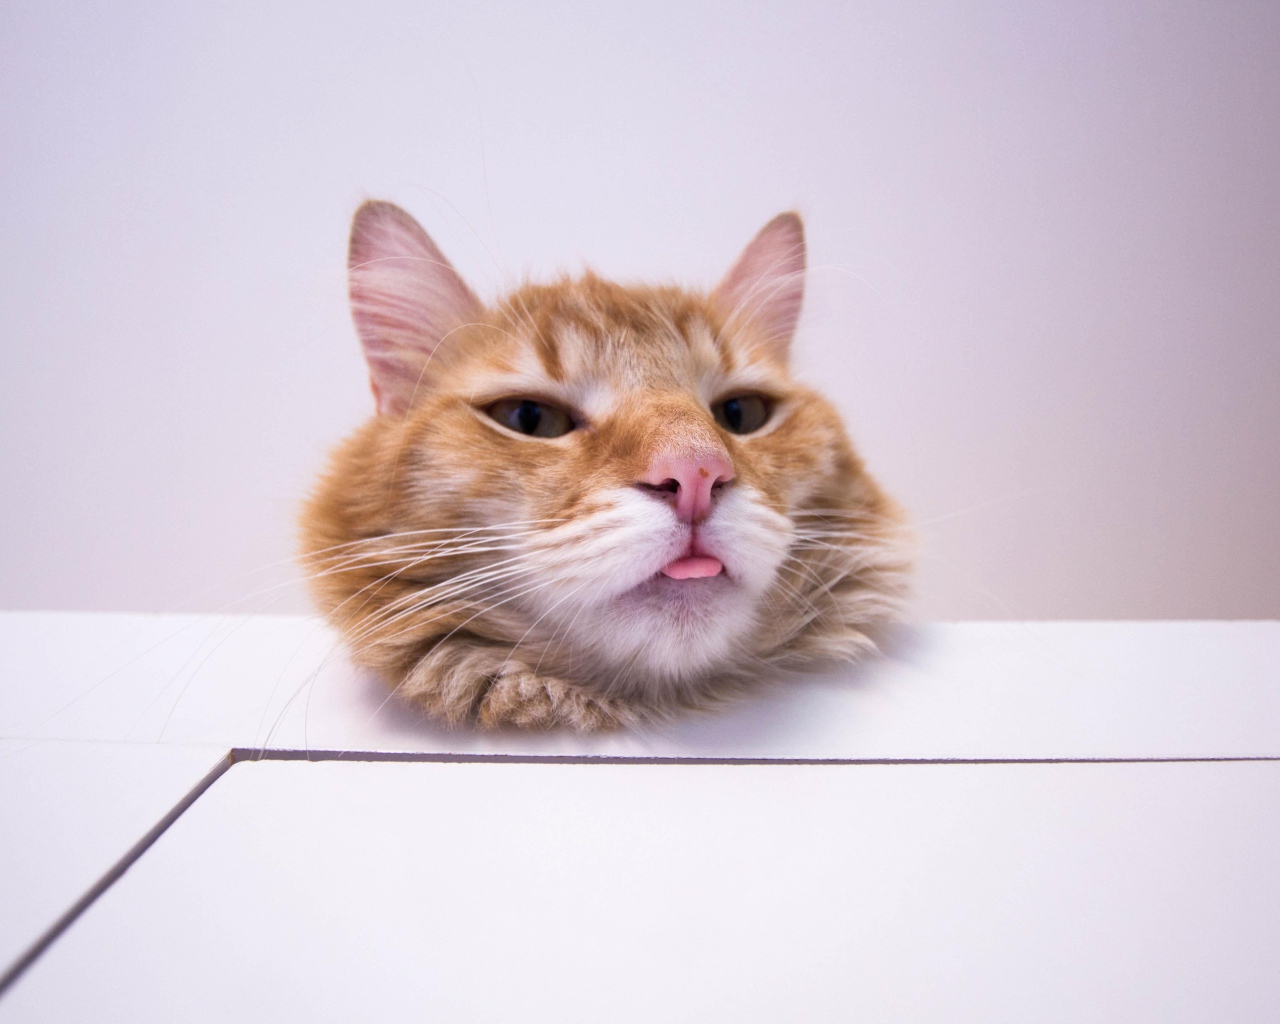 Морда довольного рыжего кота на белом столе